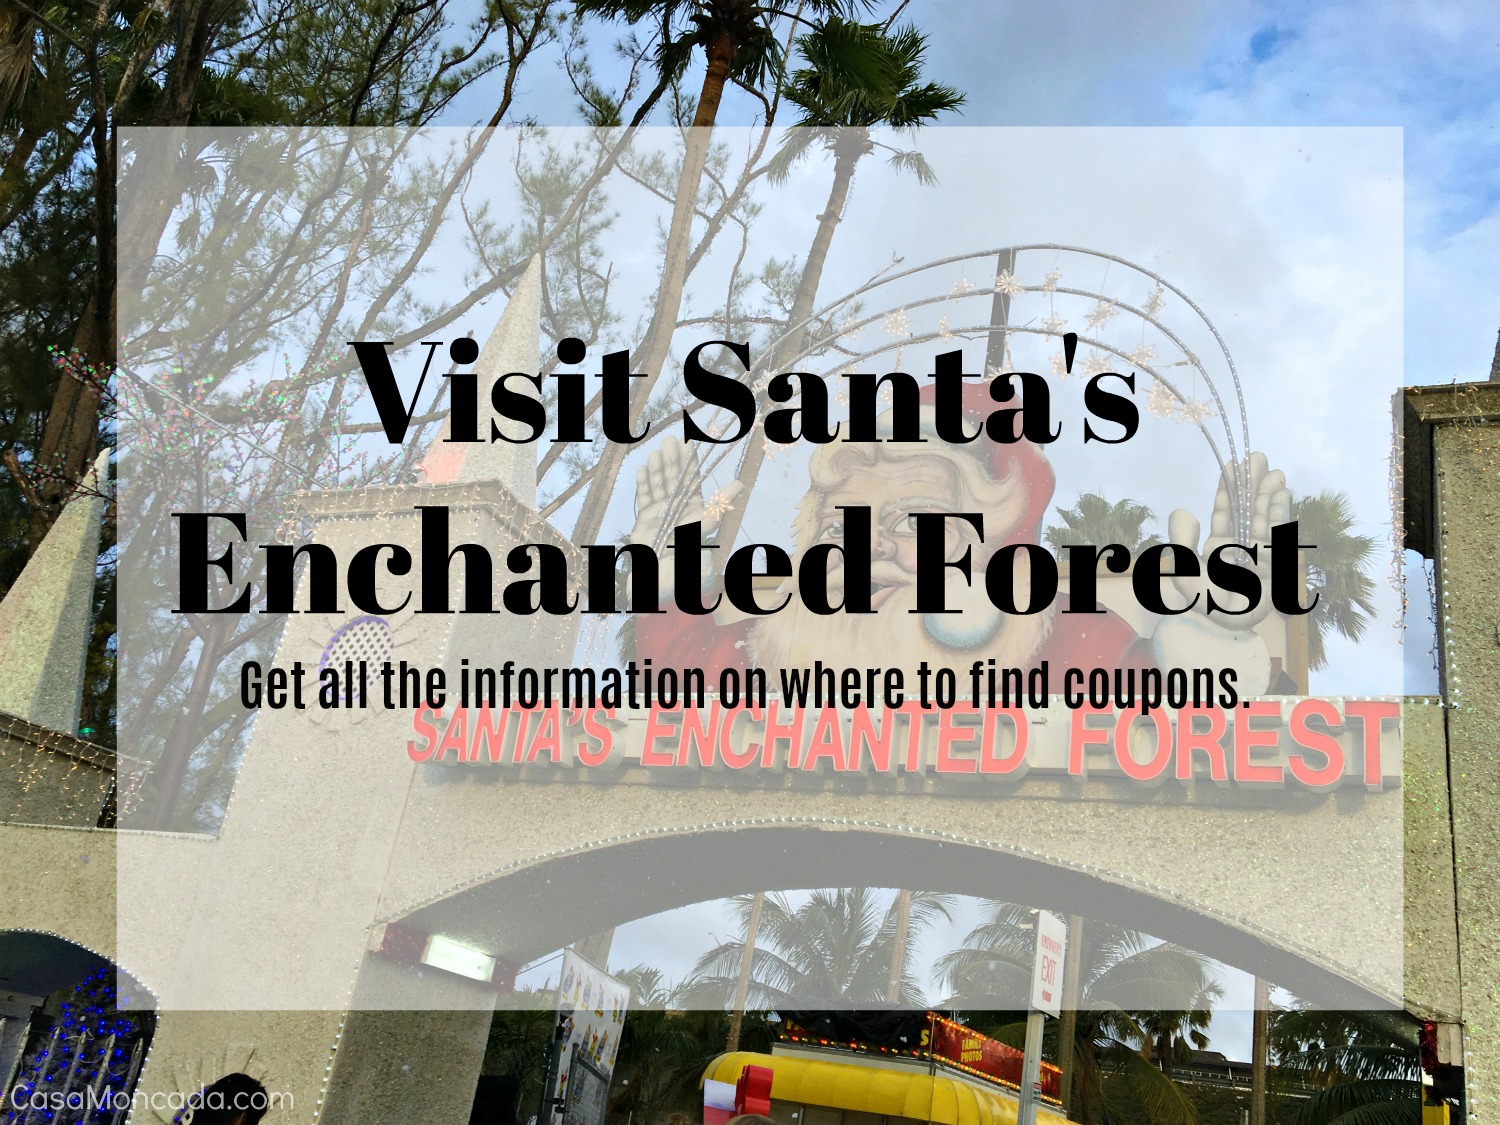 Santa's Enchanted Forest Coupon Details SprinkleDIY